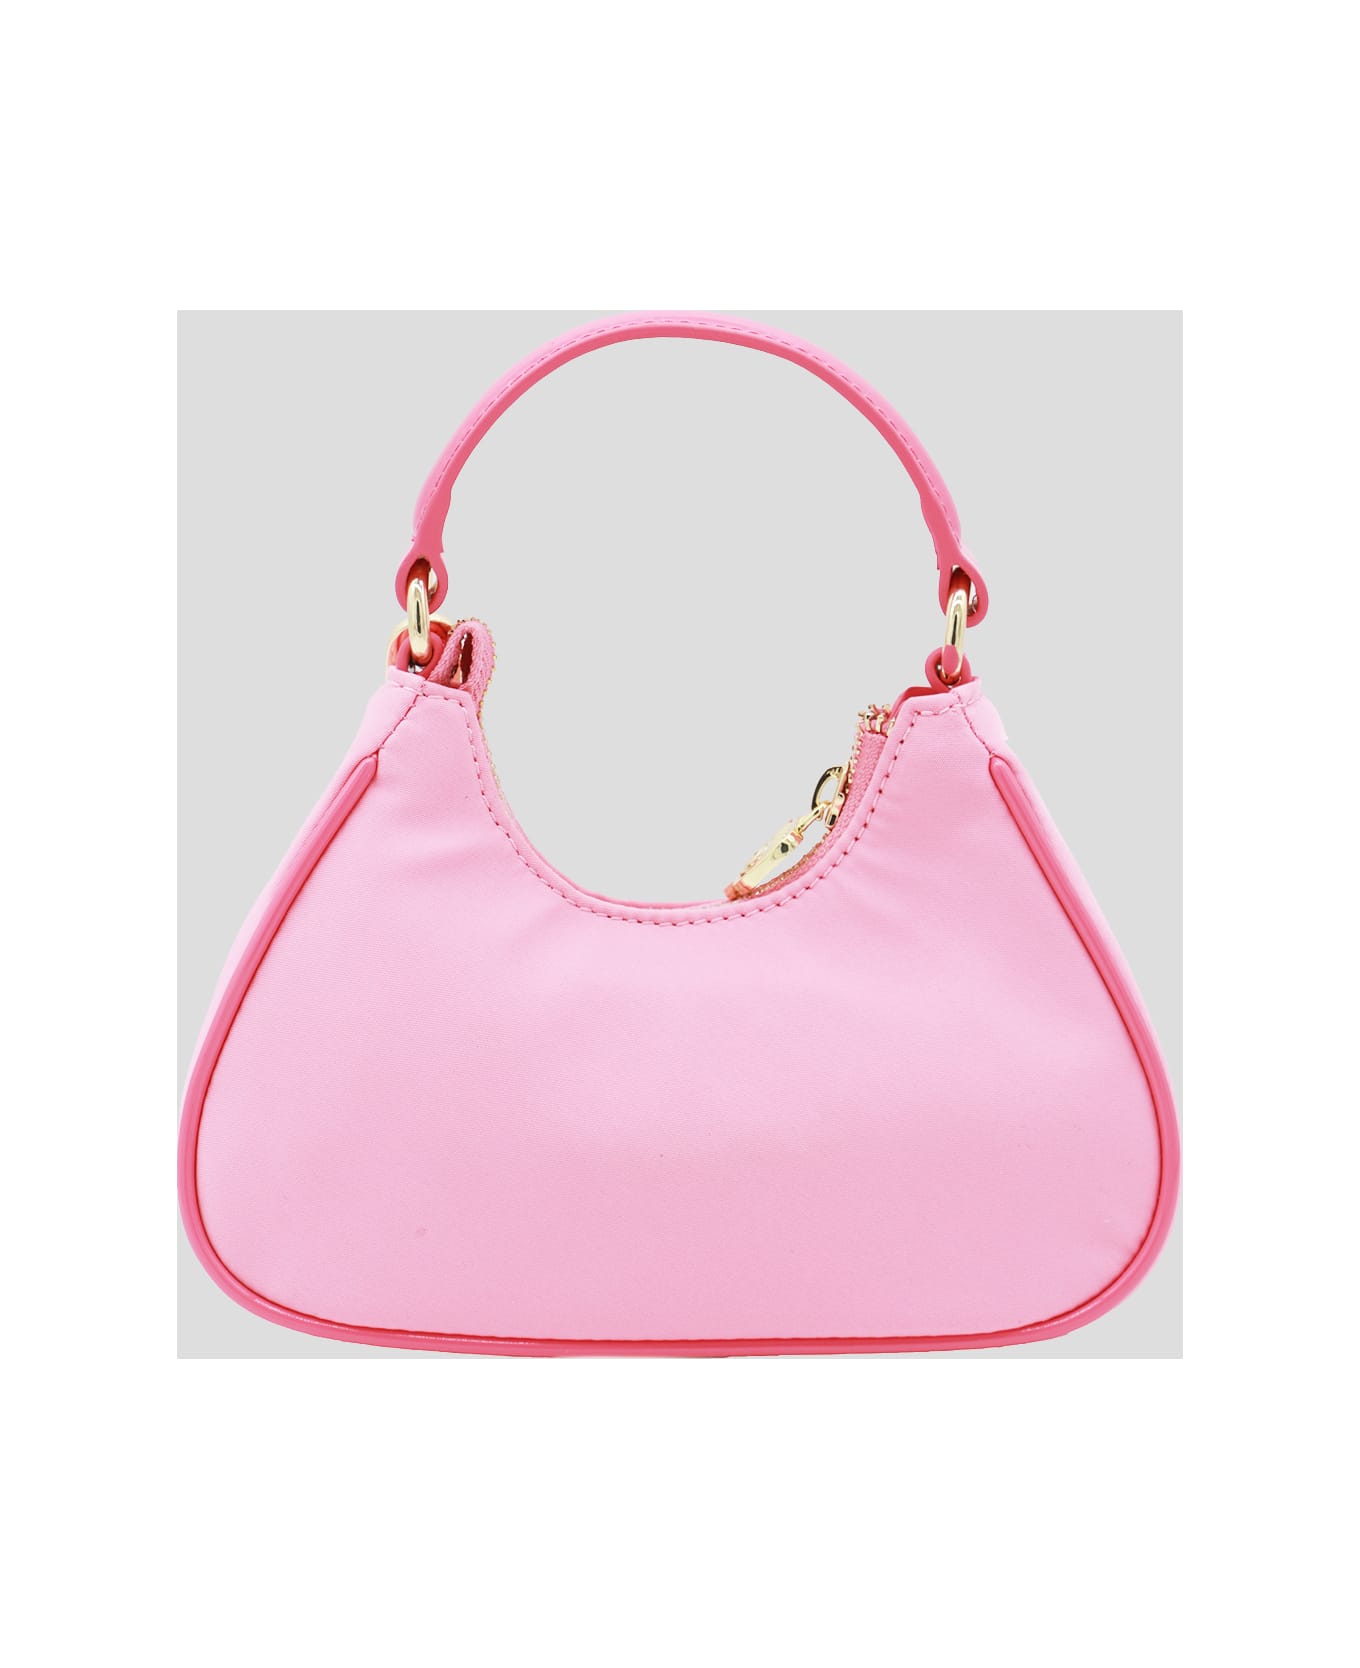 Chiara Ferragni Pink Top Handle Bag - Pink